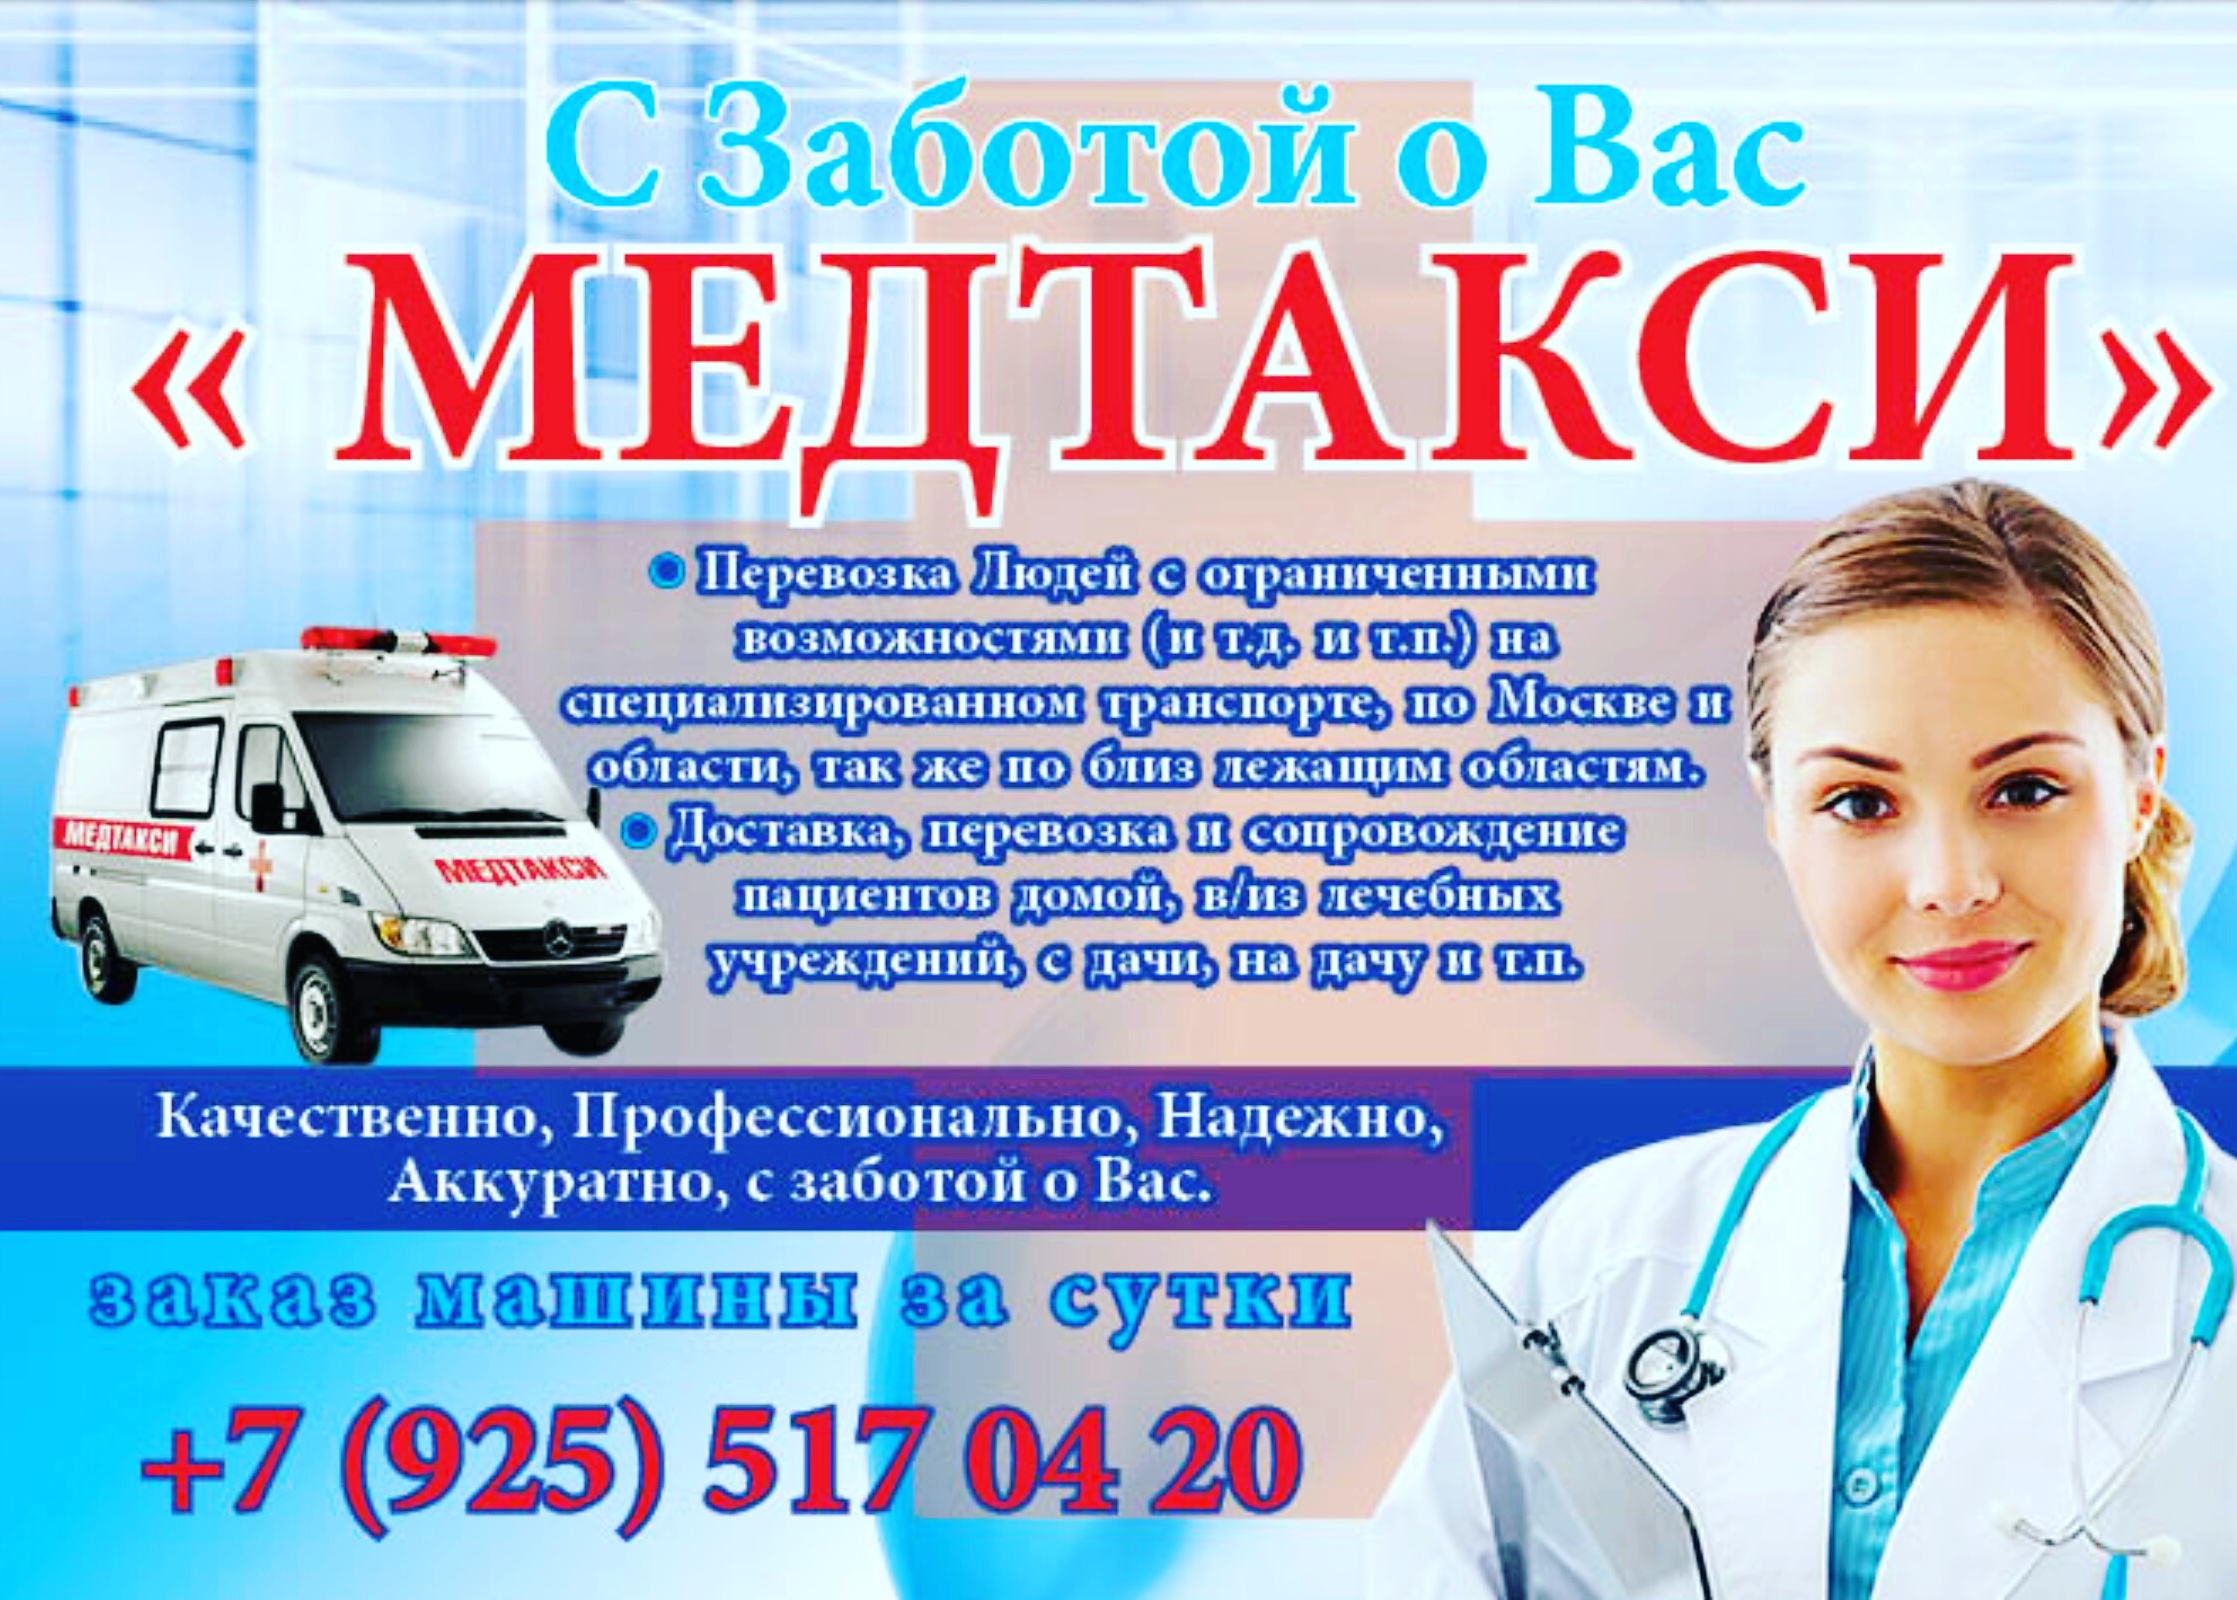 Доставка в медицинское учреждение. Медицинское такси. Мед такси 03. Мед такси Москва. Медицинское такси перевозки.